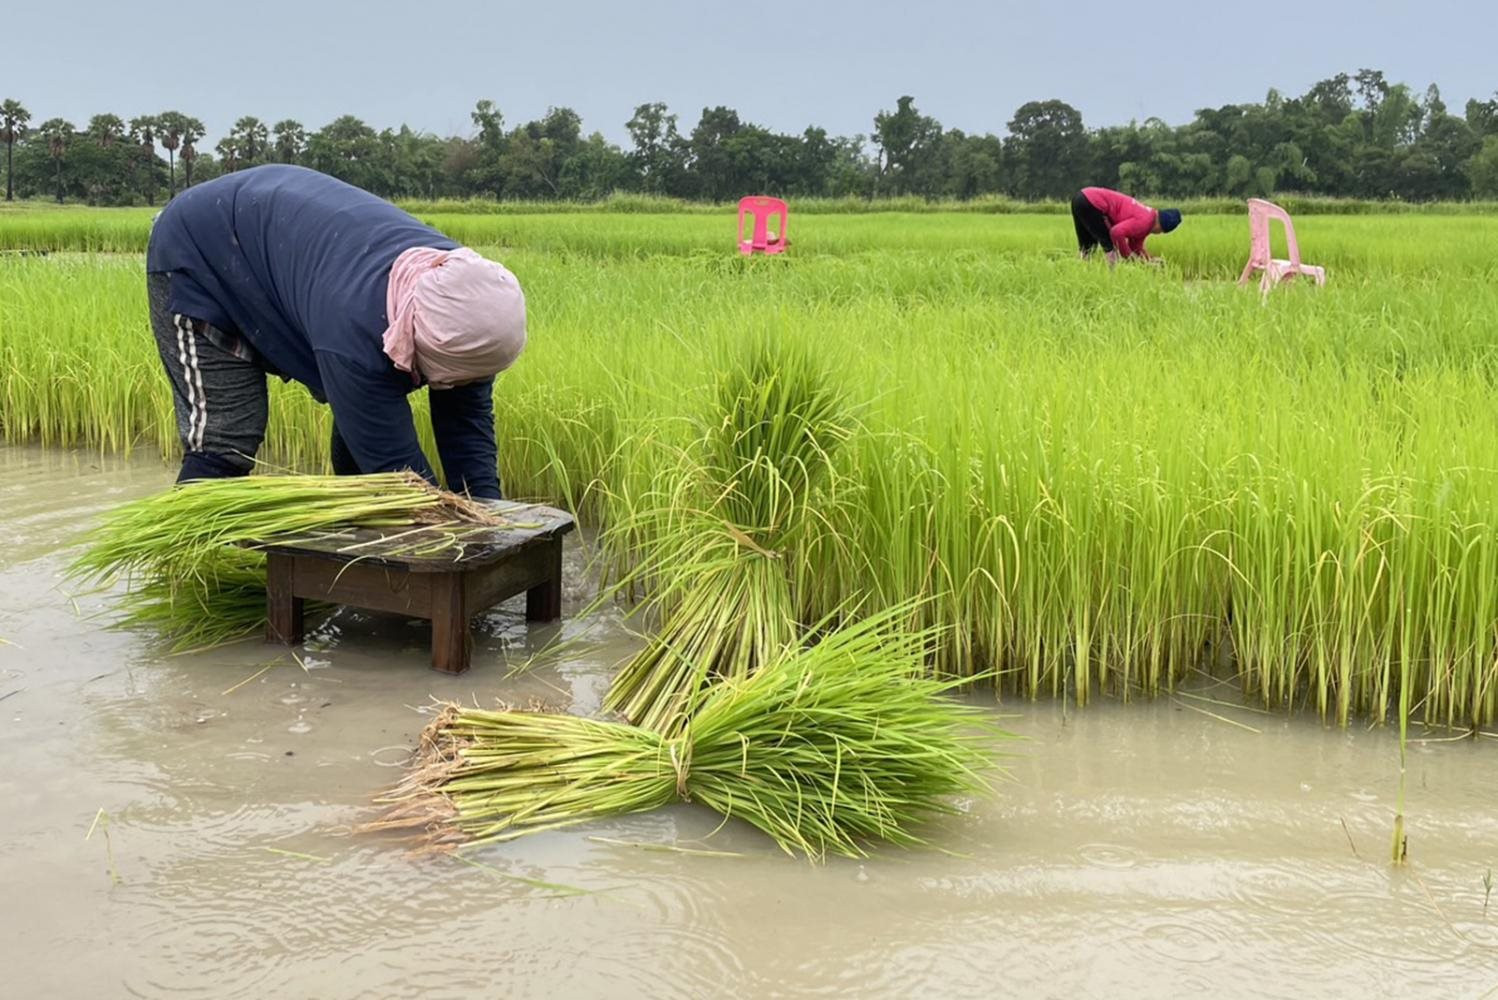 Thái Lan phê duyệt gói hỗ trợ nông dân trồng lúa trị giá 1,55 tỷ USD